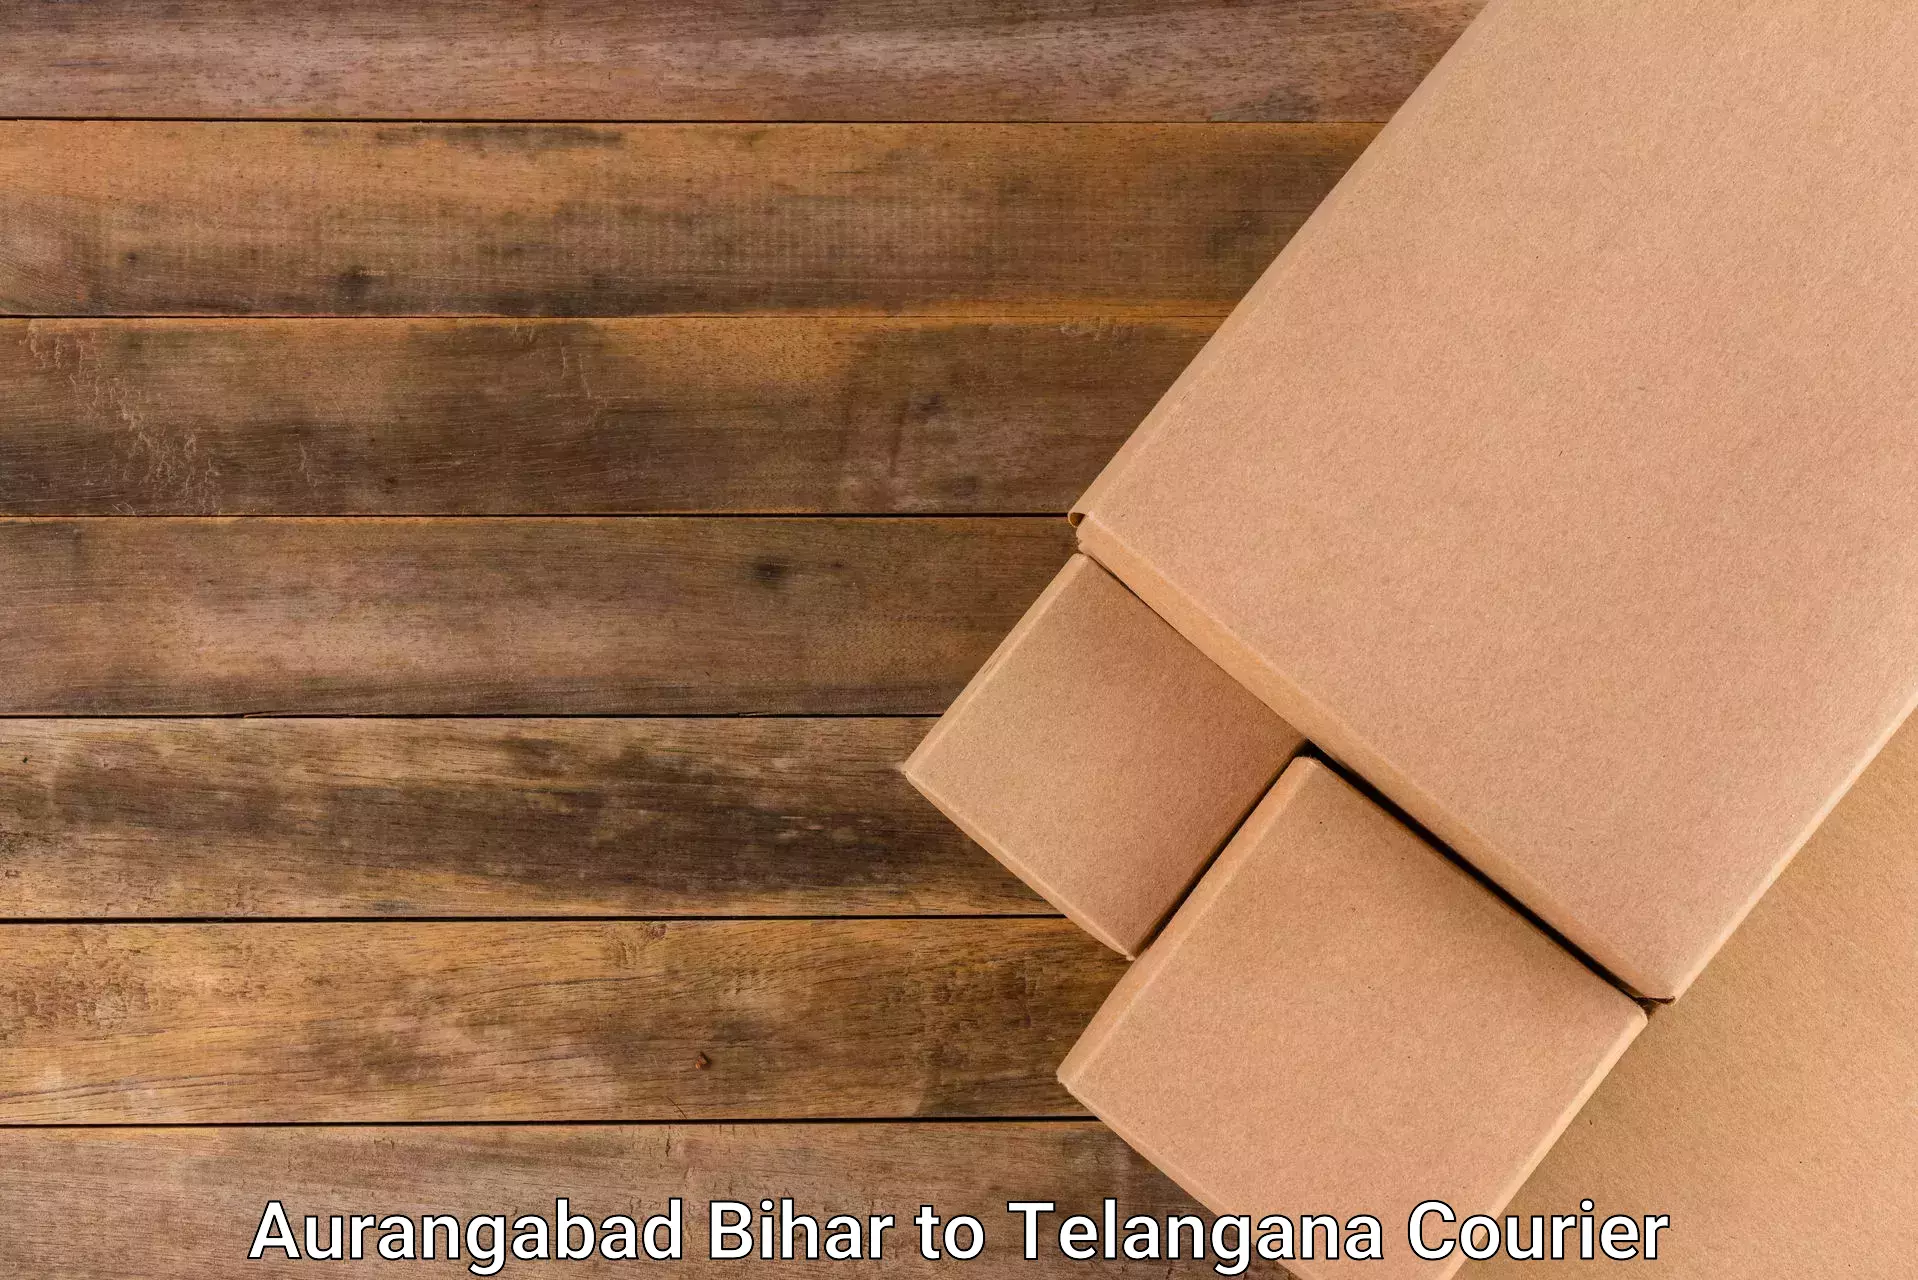 24-hour courier service in Aurangabad Bihar to Zaheerabad